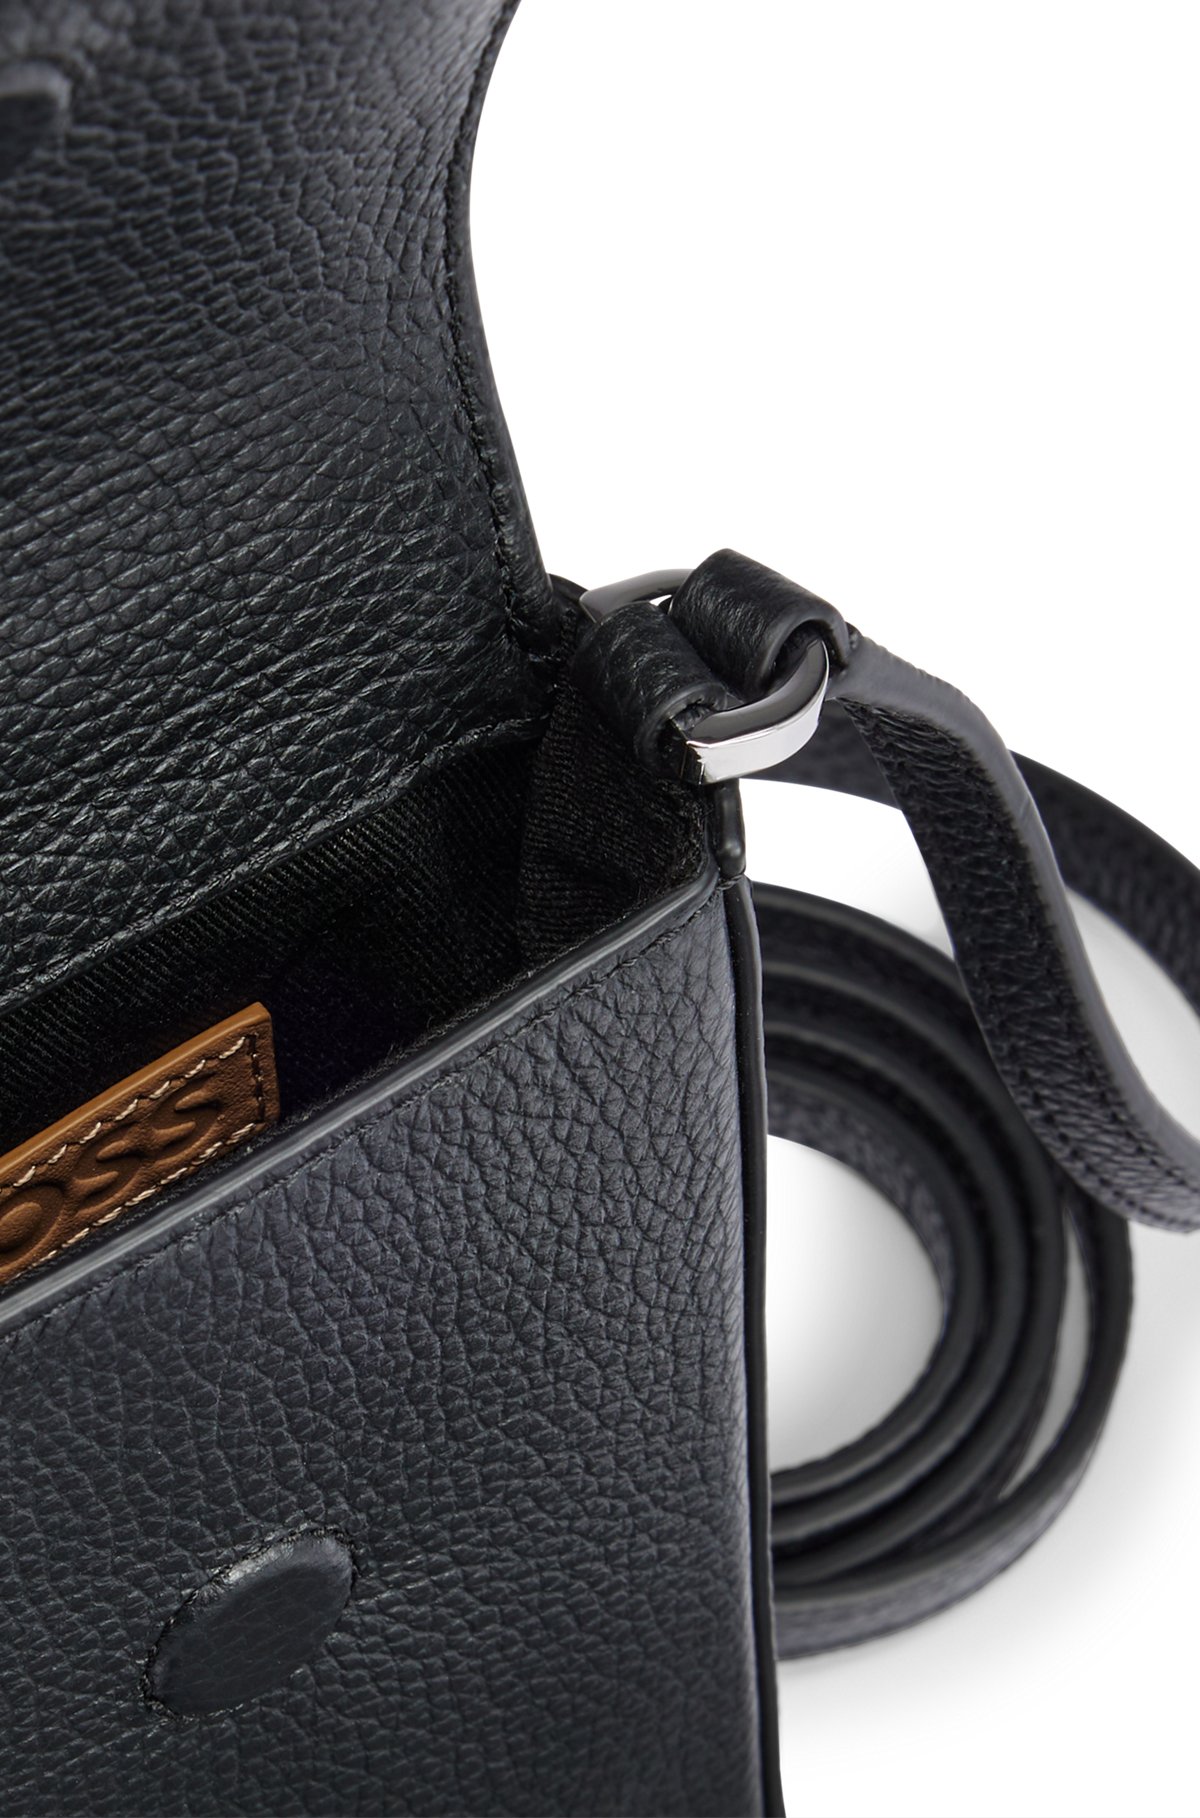 Smartphone-Tasche aus genarbtem Leder mit Metalldetails, Schwarz